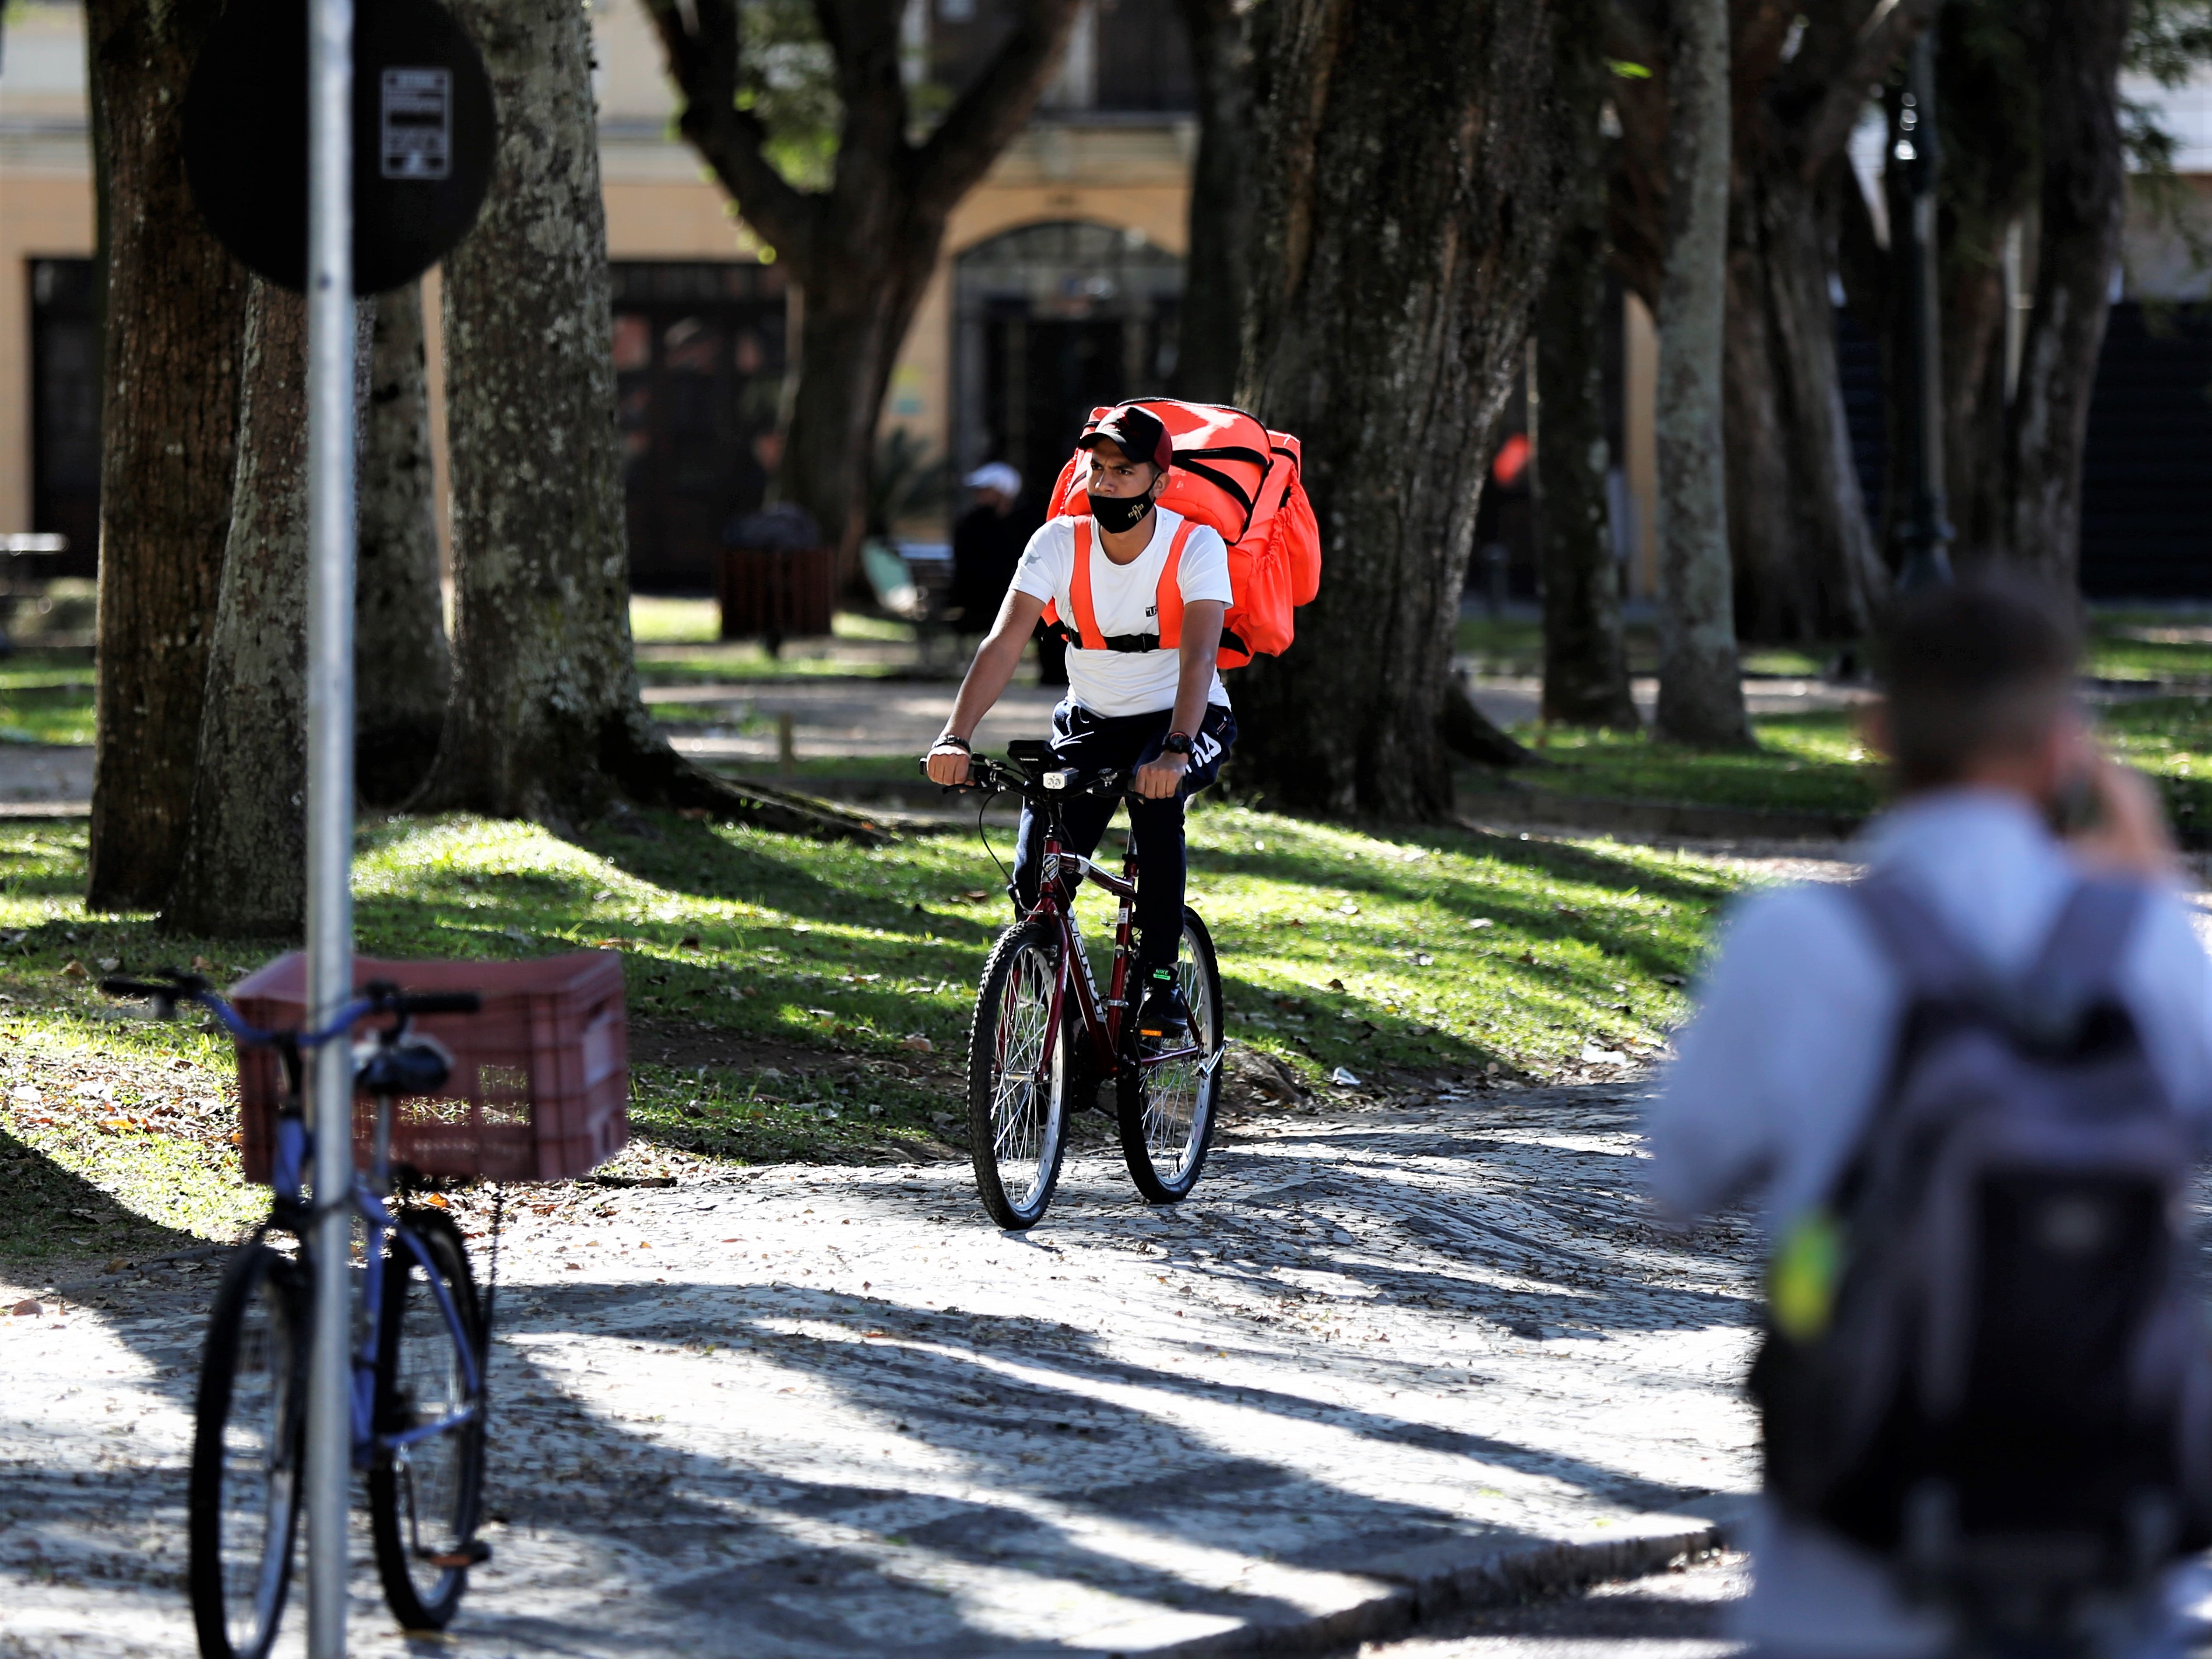 Proposta regulamentação das entregas por bicicleta em Curitiba